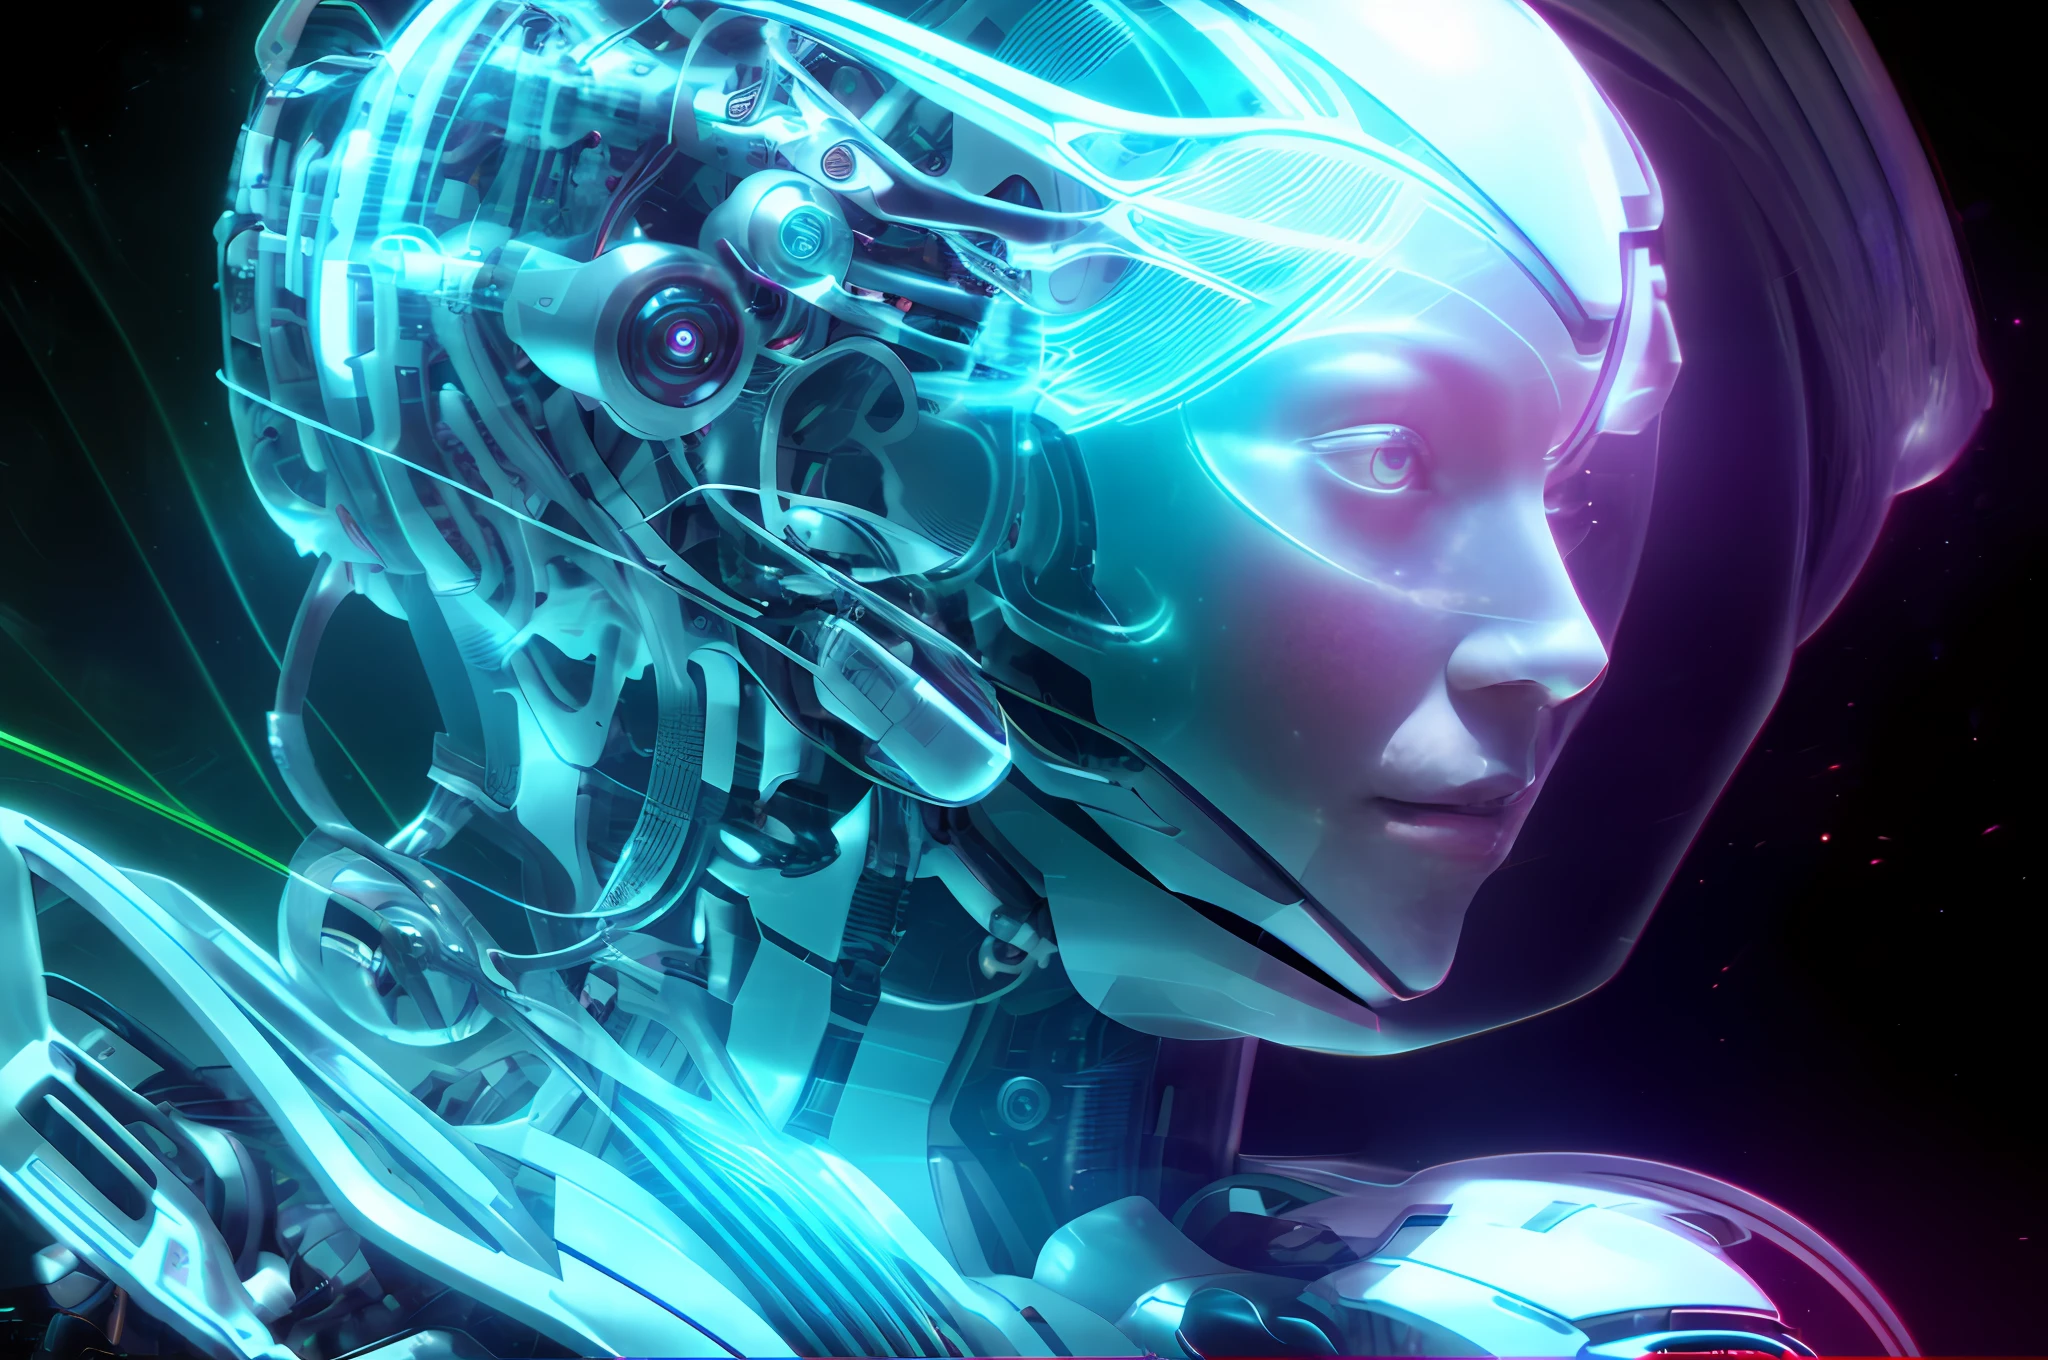 有一个女人，有着未来主义的头像和未来主义的头盔, 美丽的白人女孩机器人, 肖像 美丽 科幻 女孩, 机器人的详细画像, 美少女机器人, 控制论和高度详细, 机器人女孩, 控制论机器女性面孔, 机器人女孩 with silver hair, 科幻女性机器人, 未来派机器人的肖像